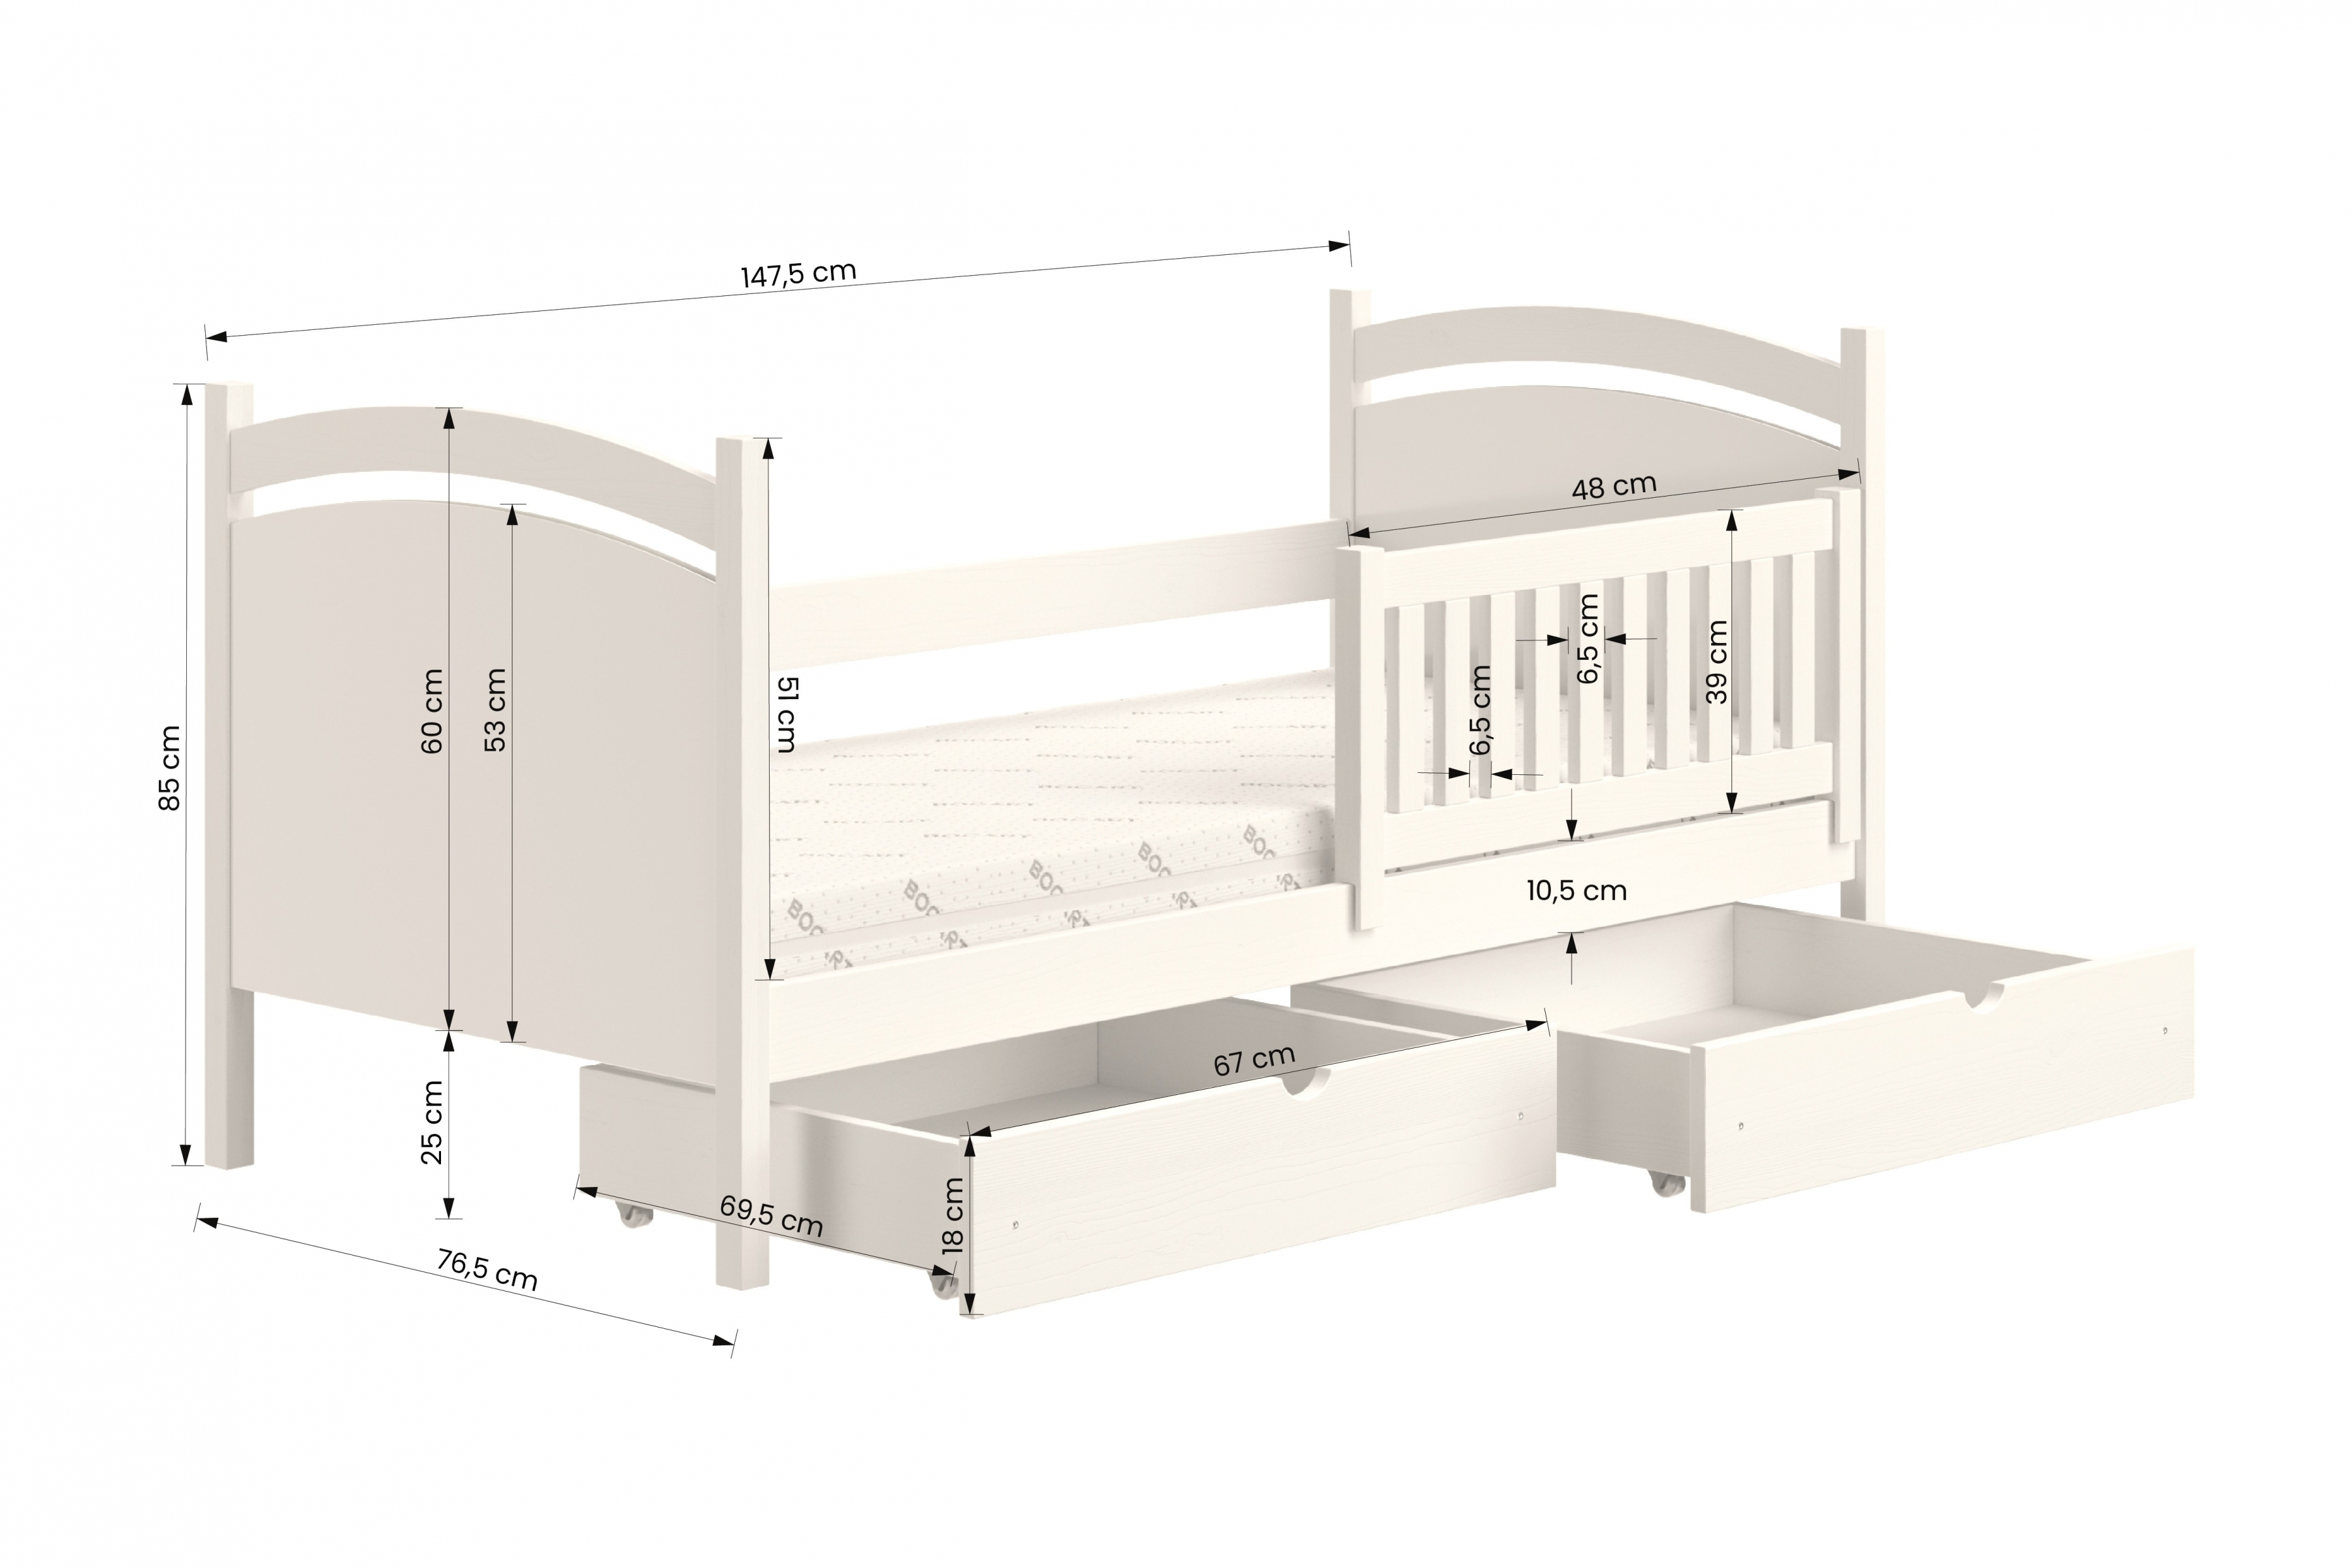 postel dětské s tabulí na suché mazání Amely - Barva šedý, rozměr 70x140 postel dzieciece z tablica suchoscieralna Amely - Rozměry